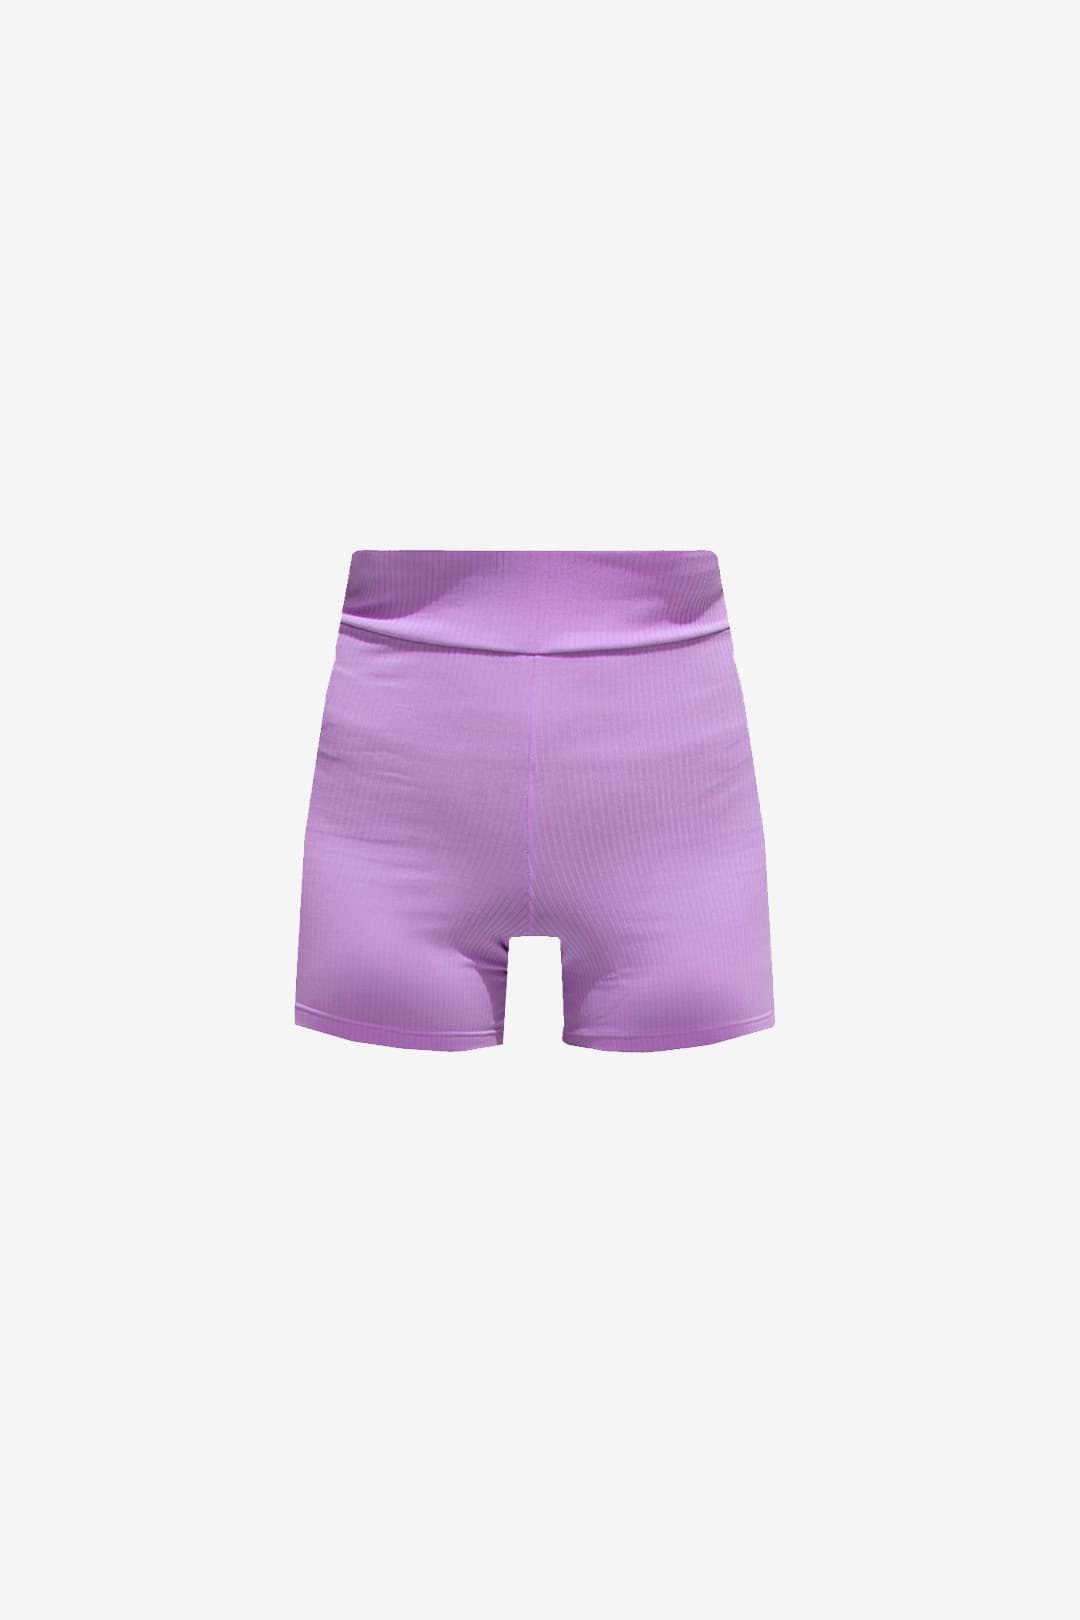 OLS - Shorts The Mini Malha Canelada Lilac